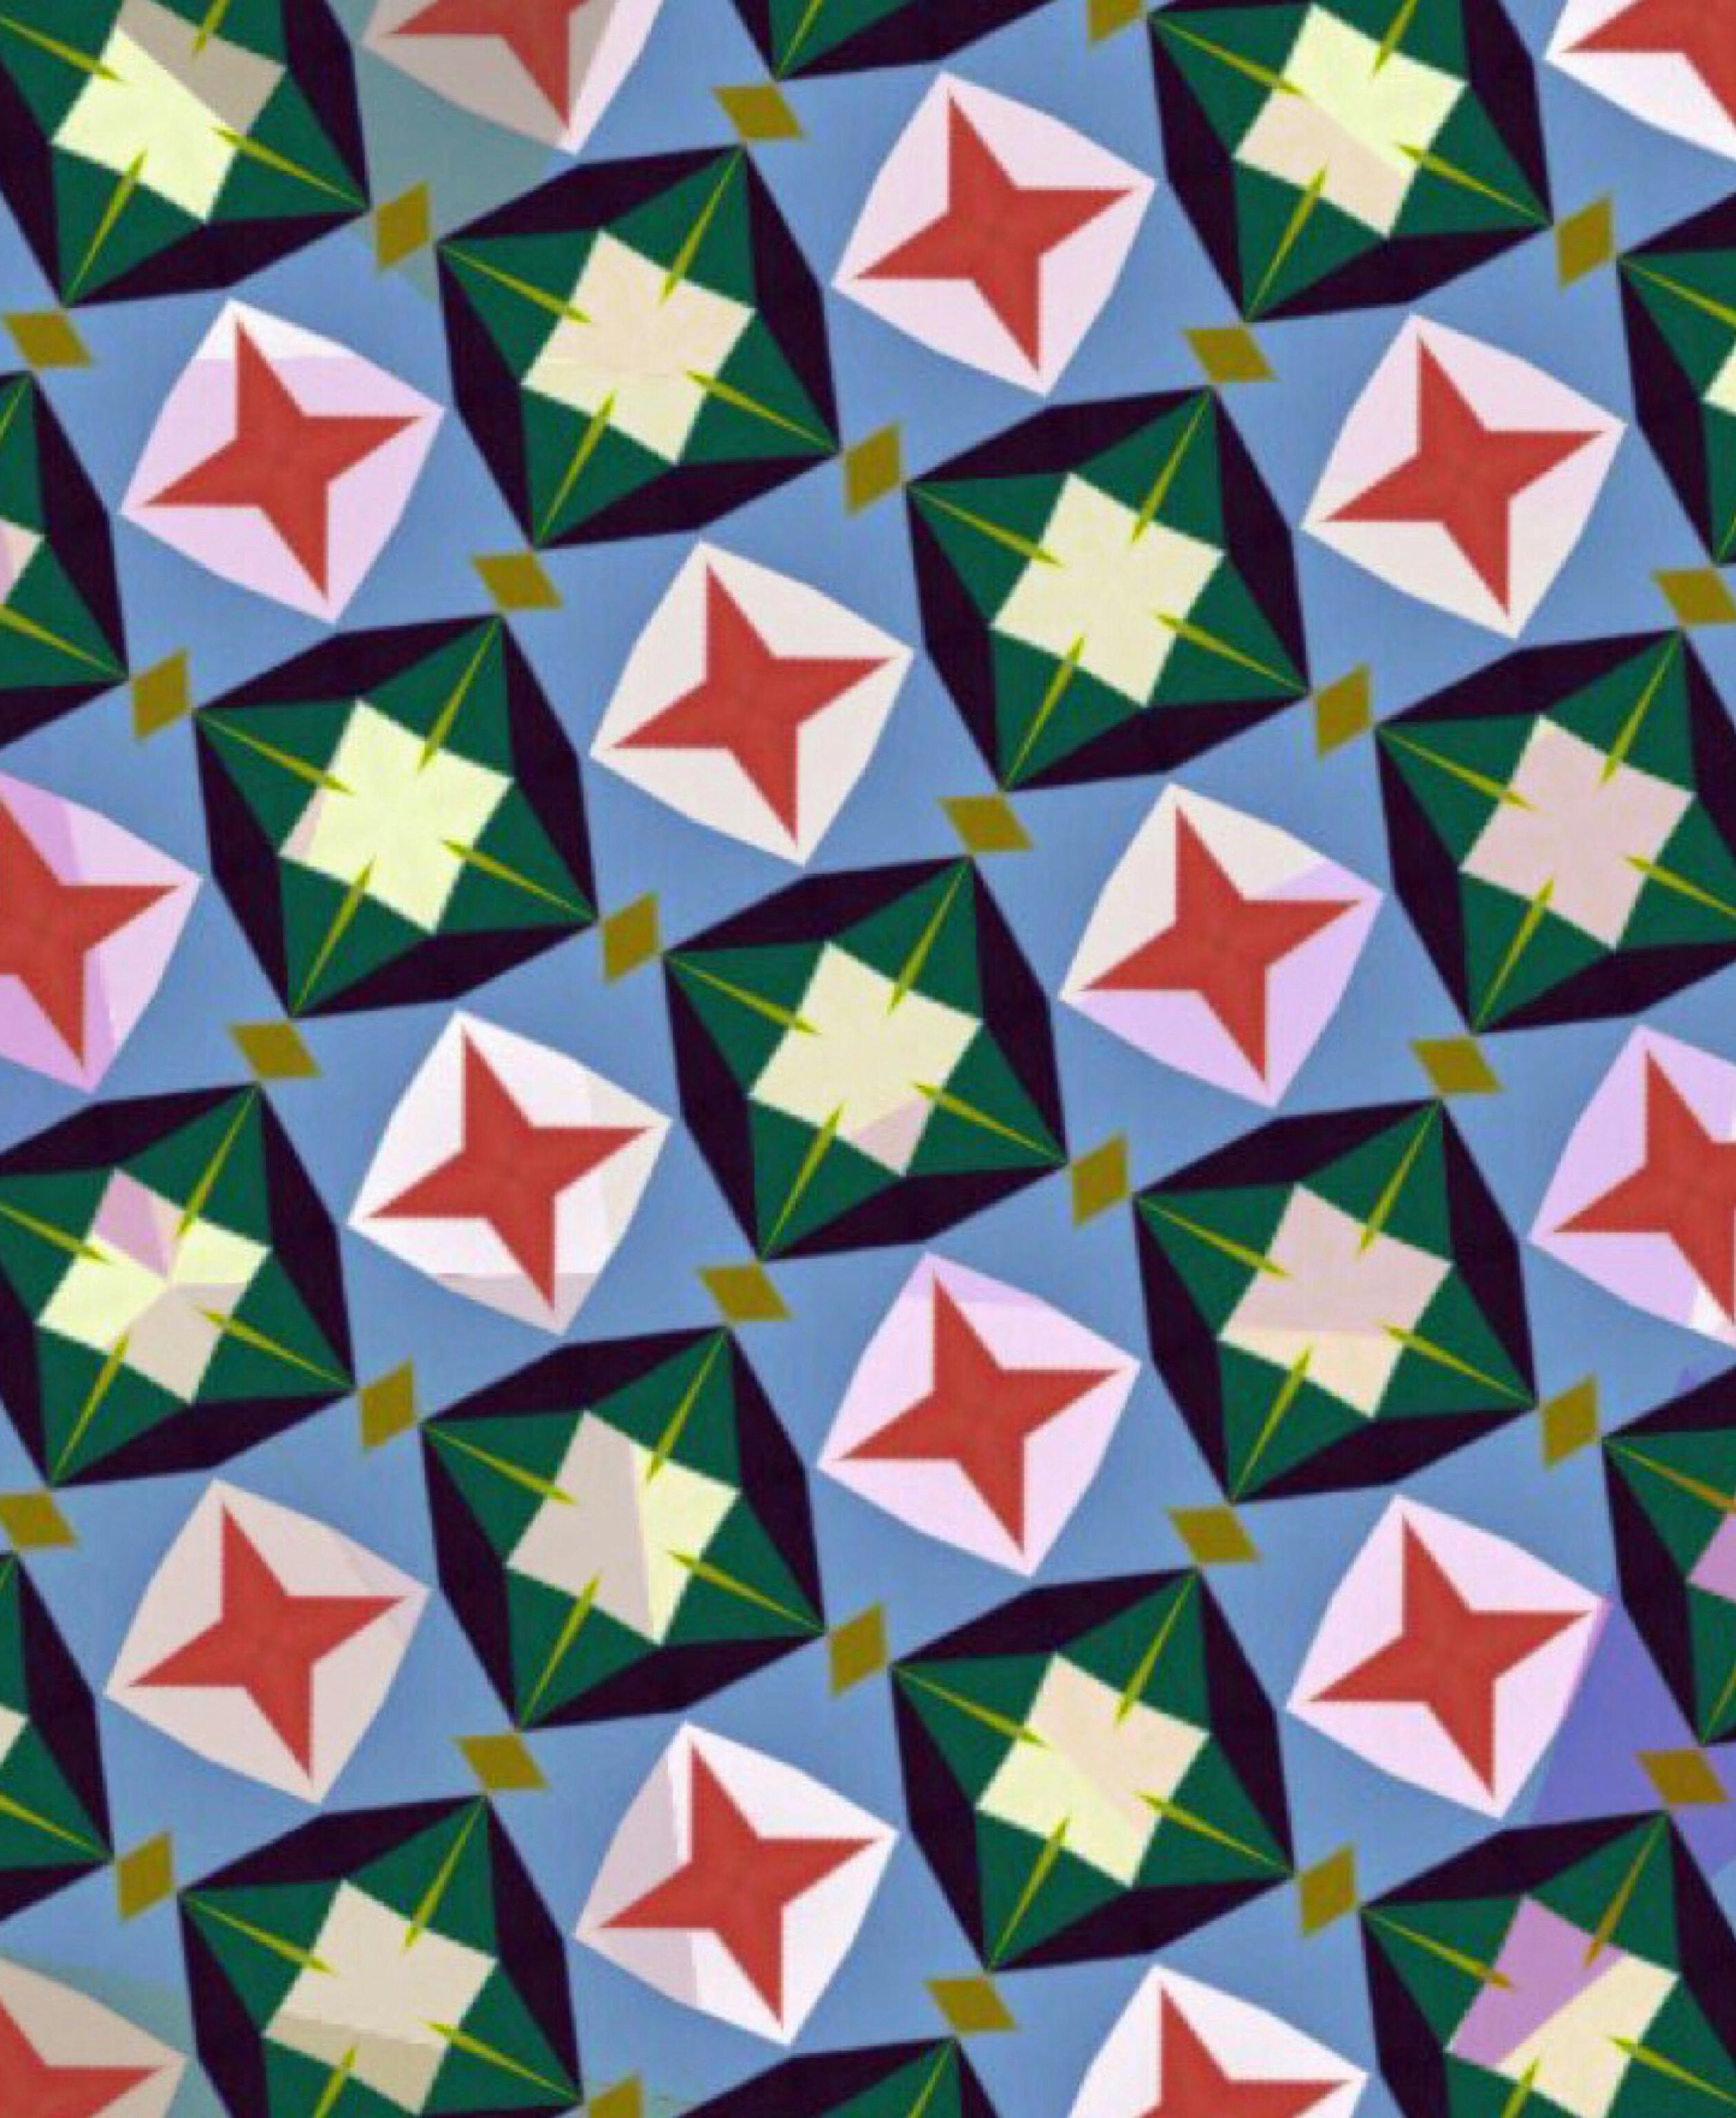 Gambar Corak Geometris - Corak geometri sebagai hiasan dinding dan idea